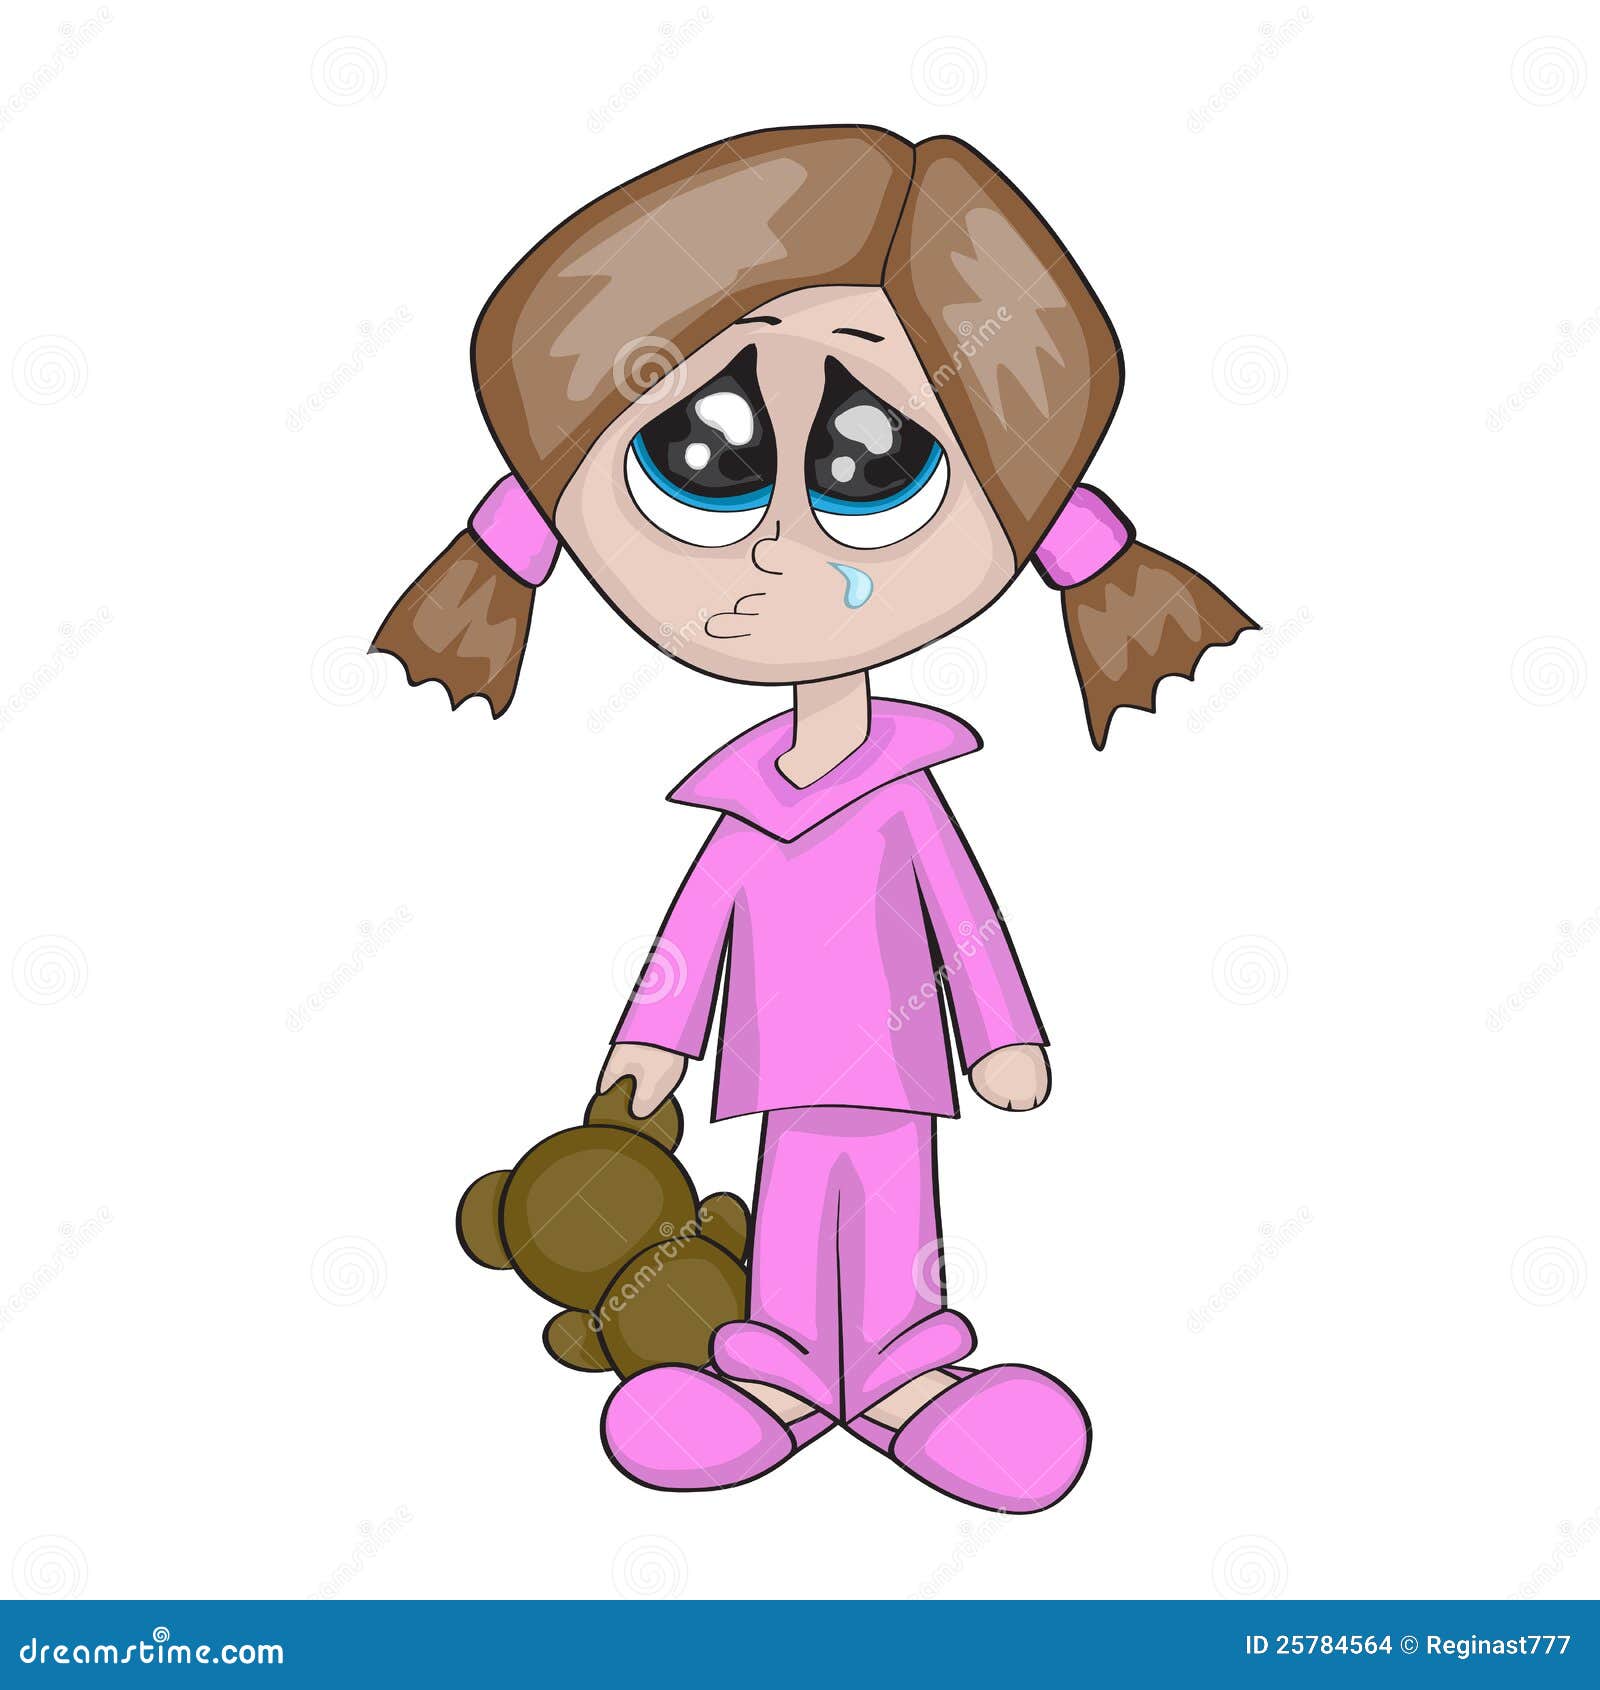 Crying girl stock vector. Illustration of little, guilt - 25784564